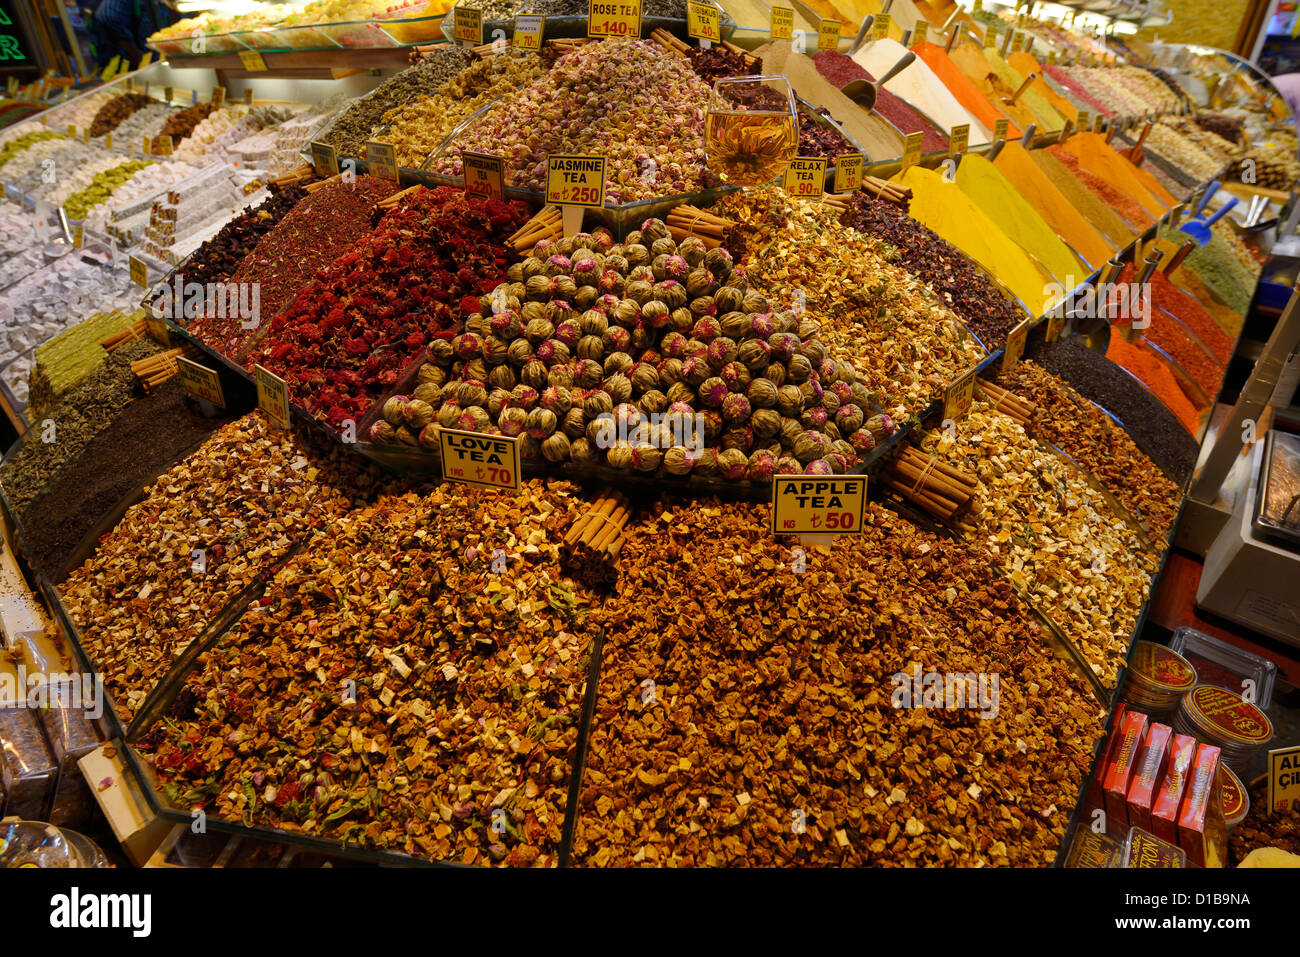 Amor entre otros sabores de té con especias y delicias turcas en el bazar egipcio o de las especias Eminonu Fatih Estambul Turquia Foto de stock